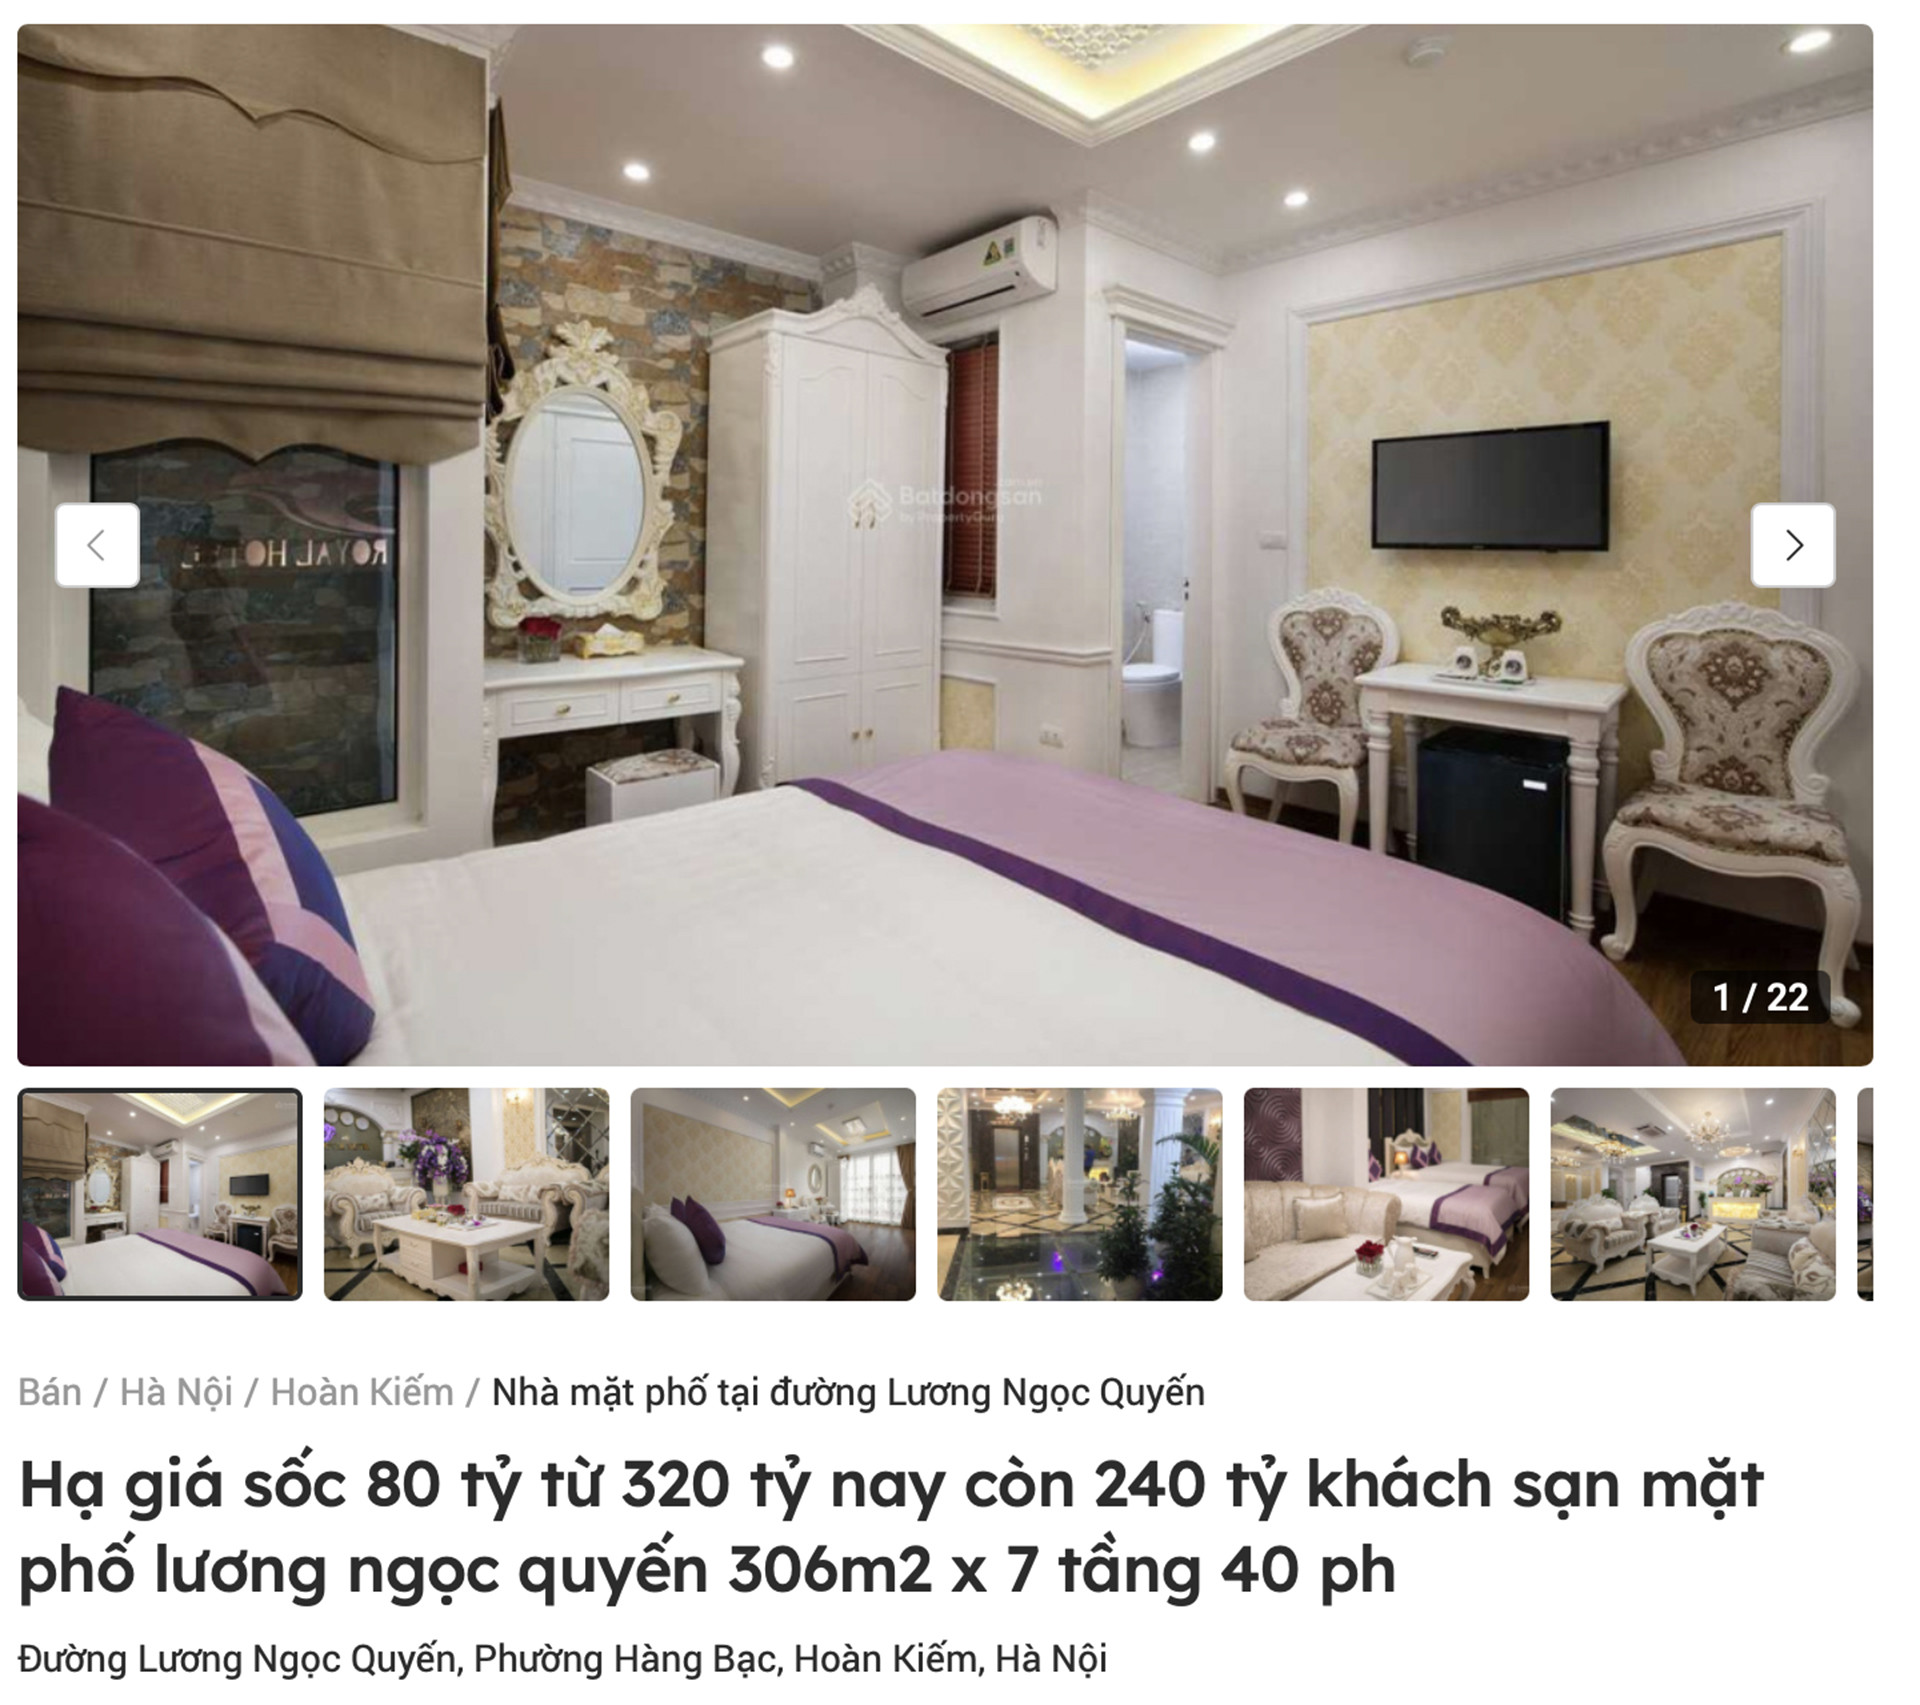 Khách sạn phố cổ Hà Nội rao giá hàng trăm tỷ, nơi dát vàng cũng tìm chủ mới - Ảnh 1.